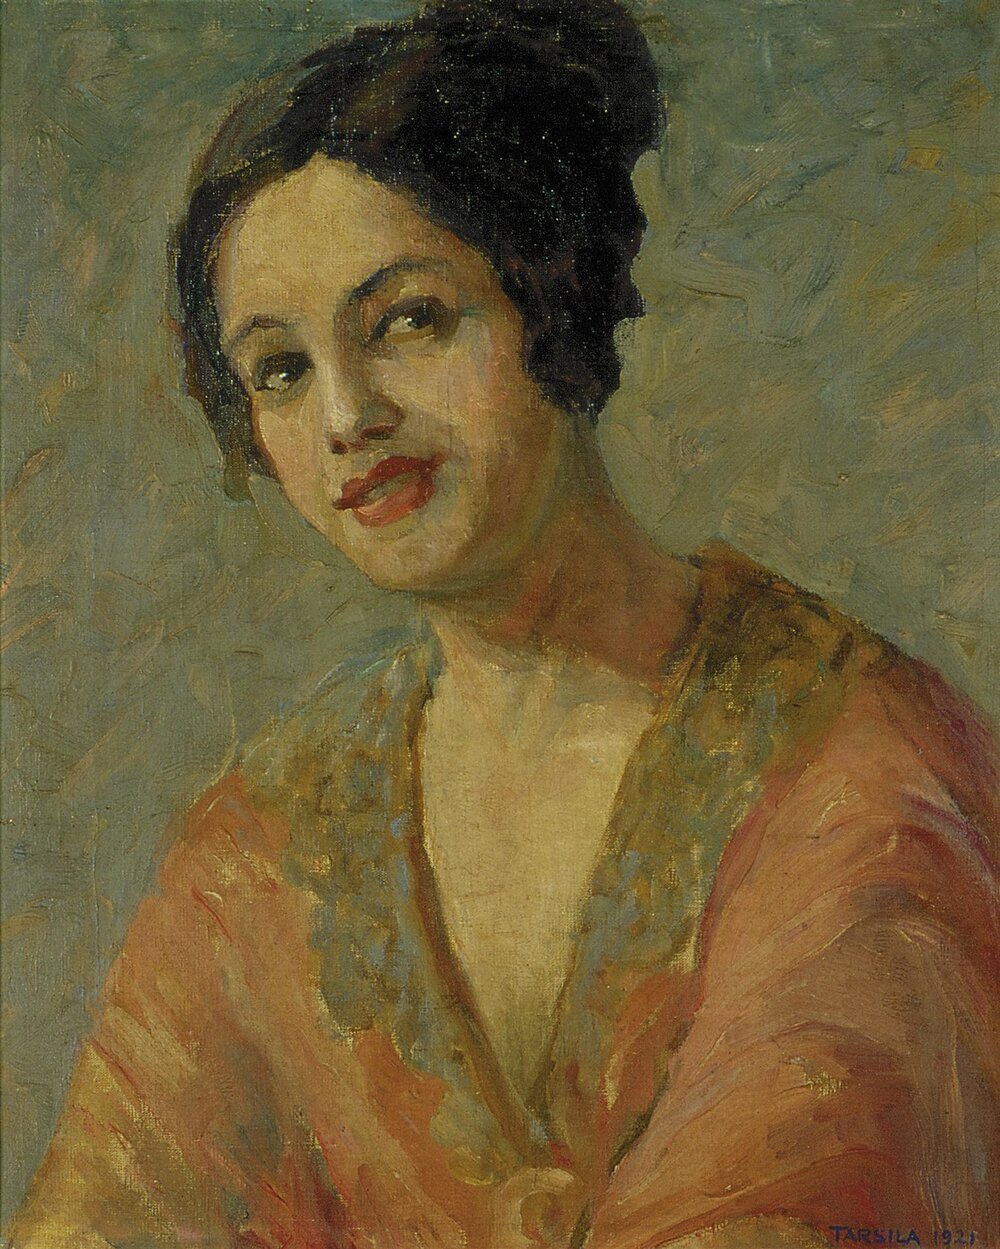 "Self-portrait with Orange Dress" by Tarsila do Amaral, 1921